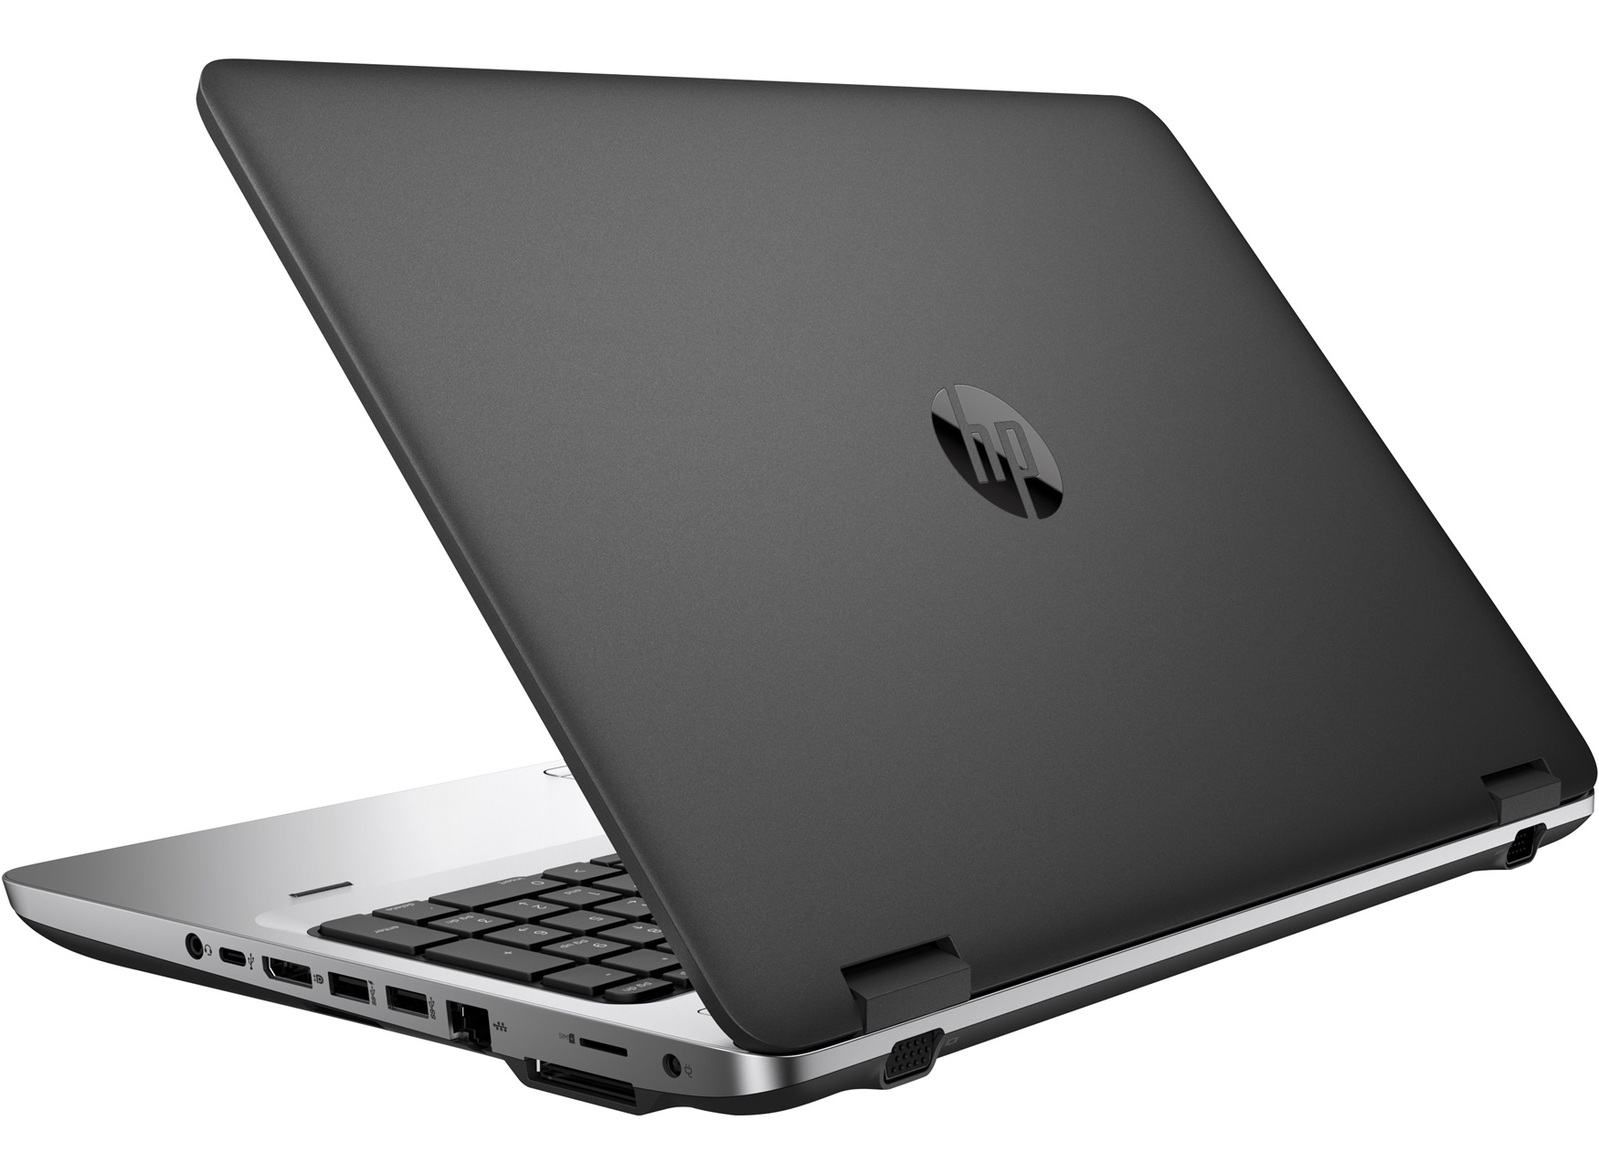 HP ProBook 650 G2 Intel i5 6300U 2.40GHz 16GB RAM 512GB SSD 15.6" Win 10 Pro - B Grade Image 2